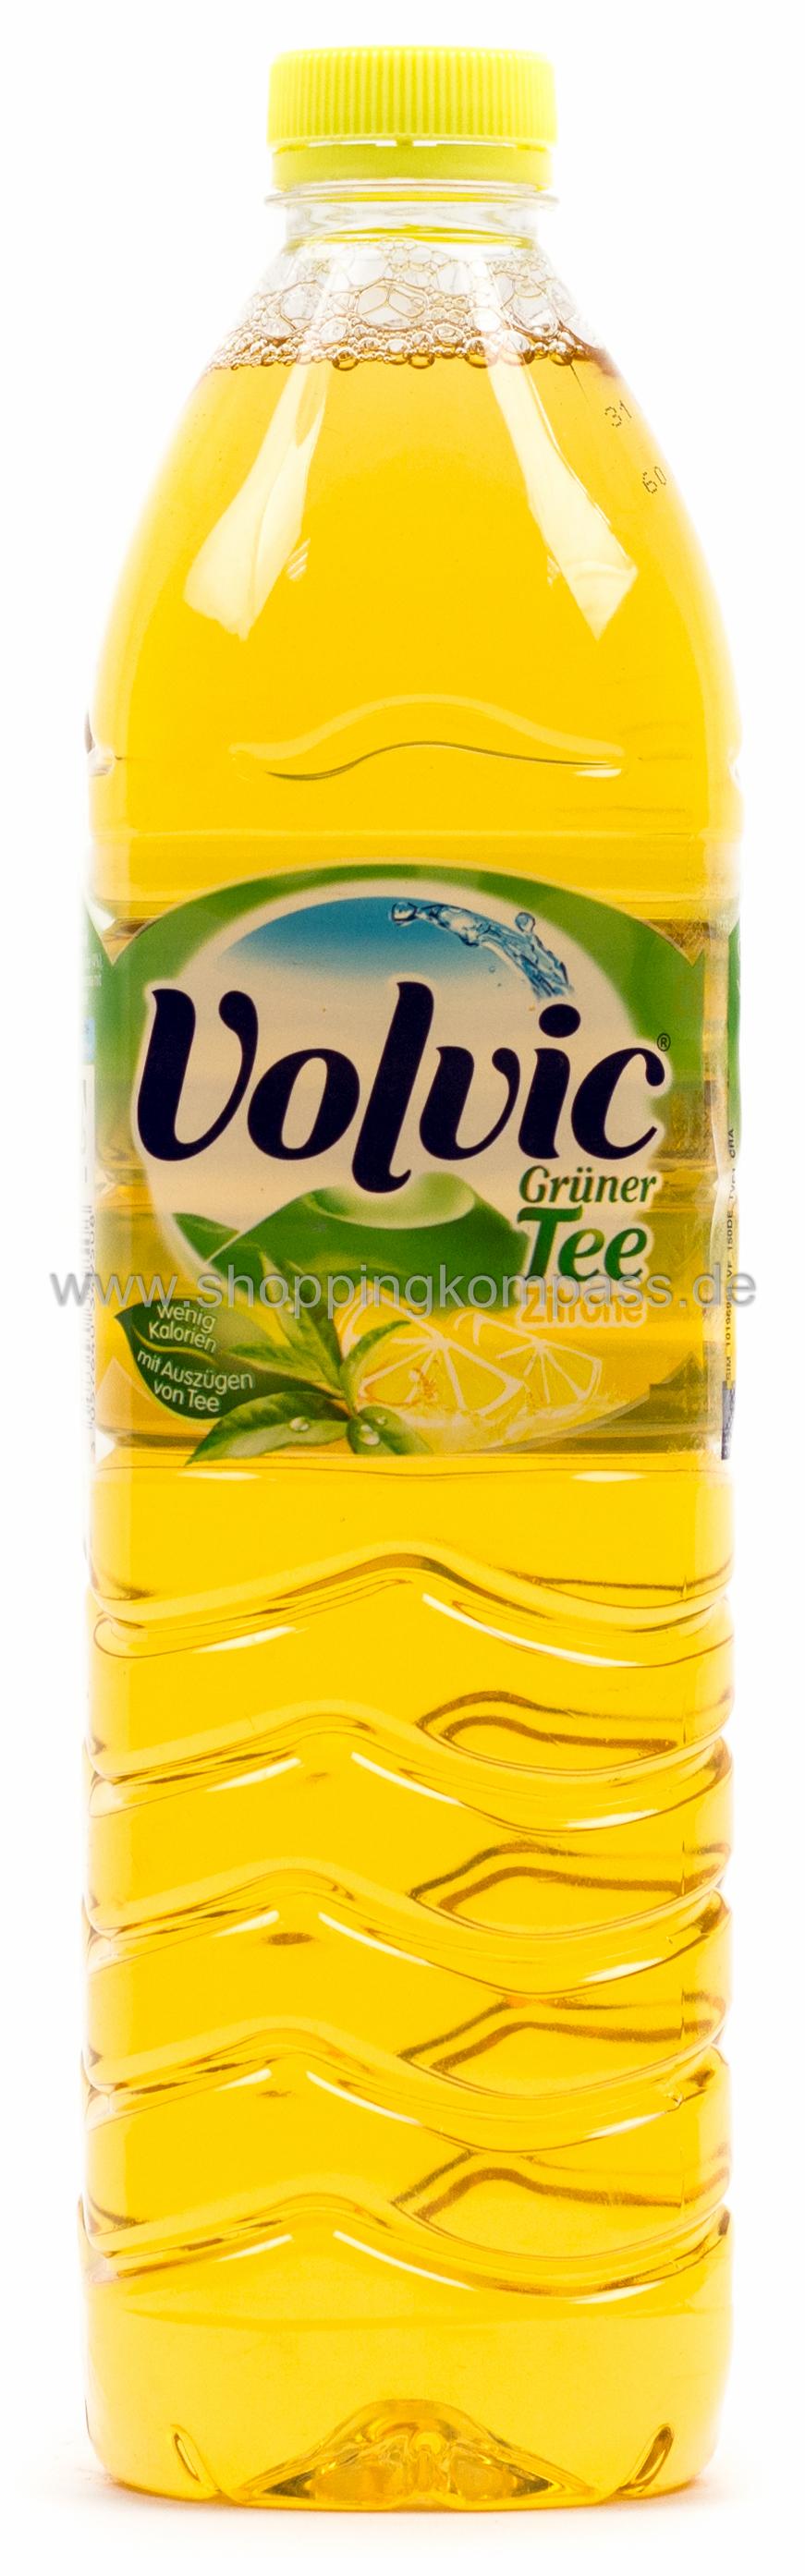 Volvic Grüner Tee Zitrone 1,5 l PET Einweg